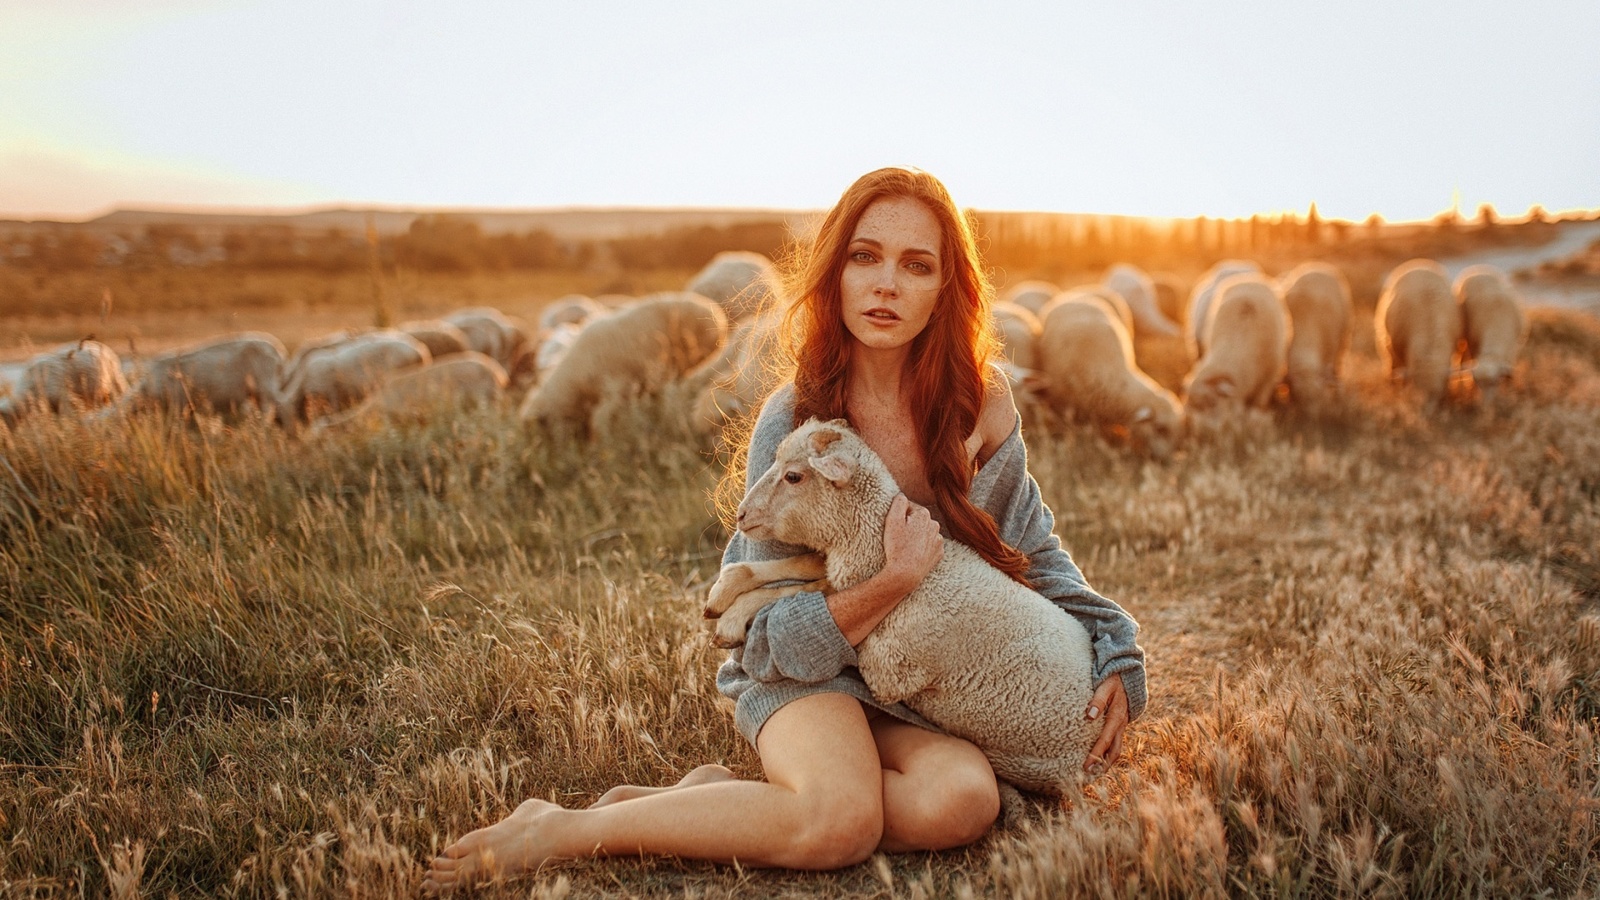 Обои Girl with Sheep 1600x900